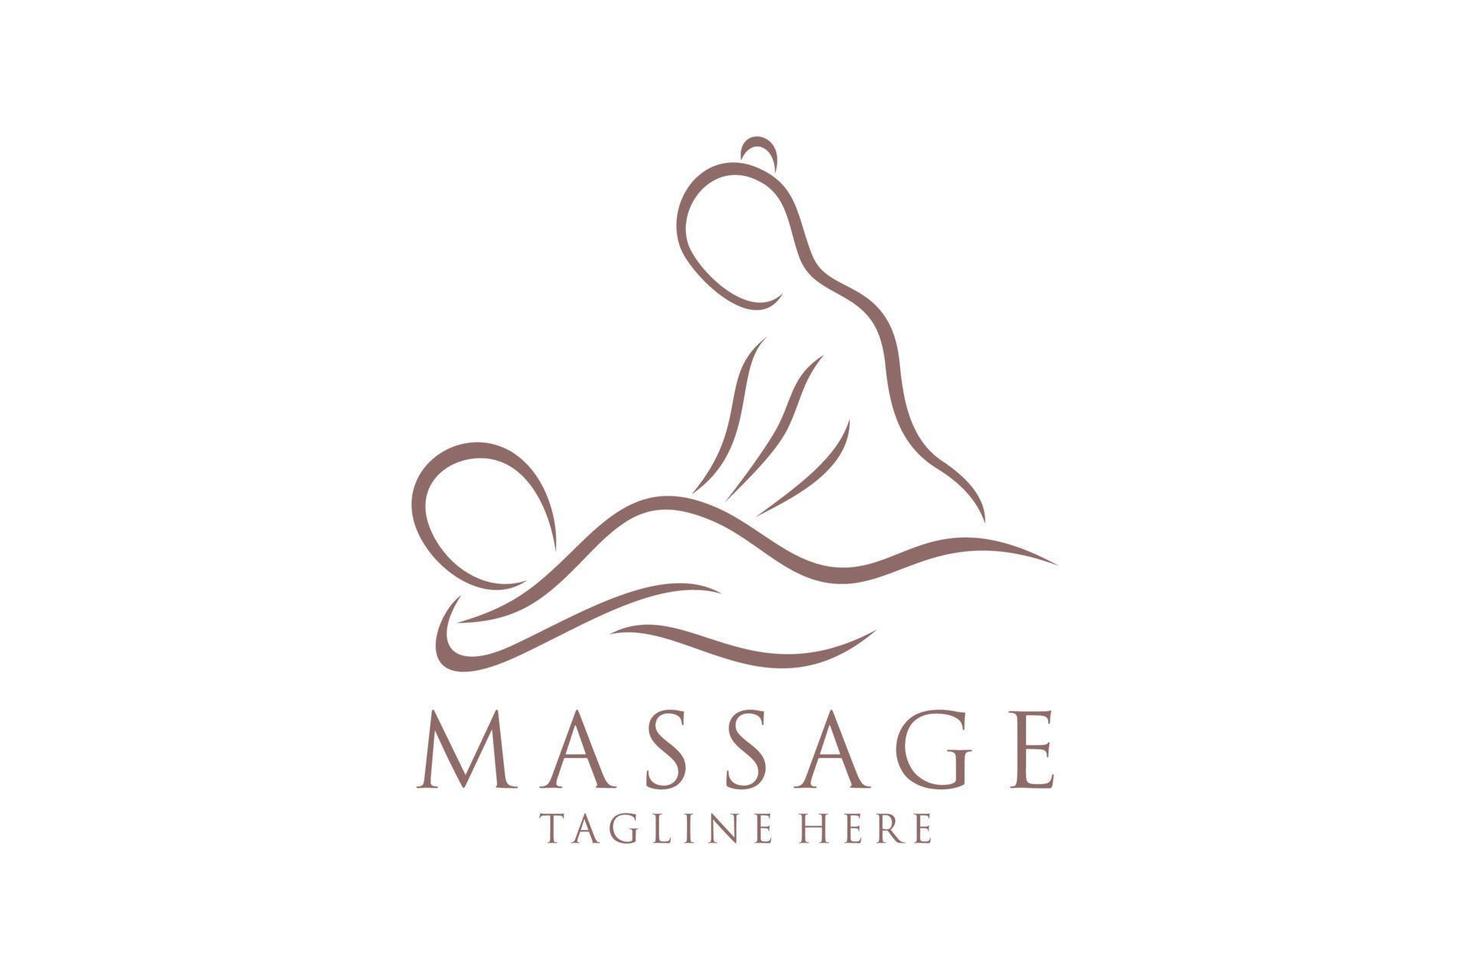 corpo massaggio logo, corpo terme centro icona, massaggio salotto, terme, relax, ringiovanire, essenziale olio, bianca sfondo, vettore illustrazione